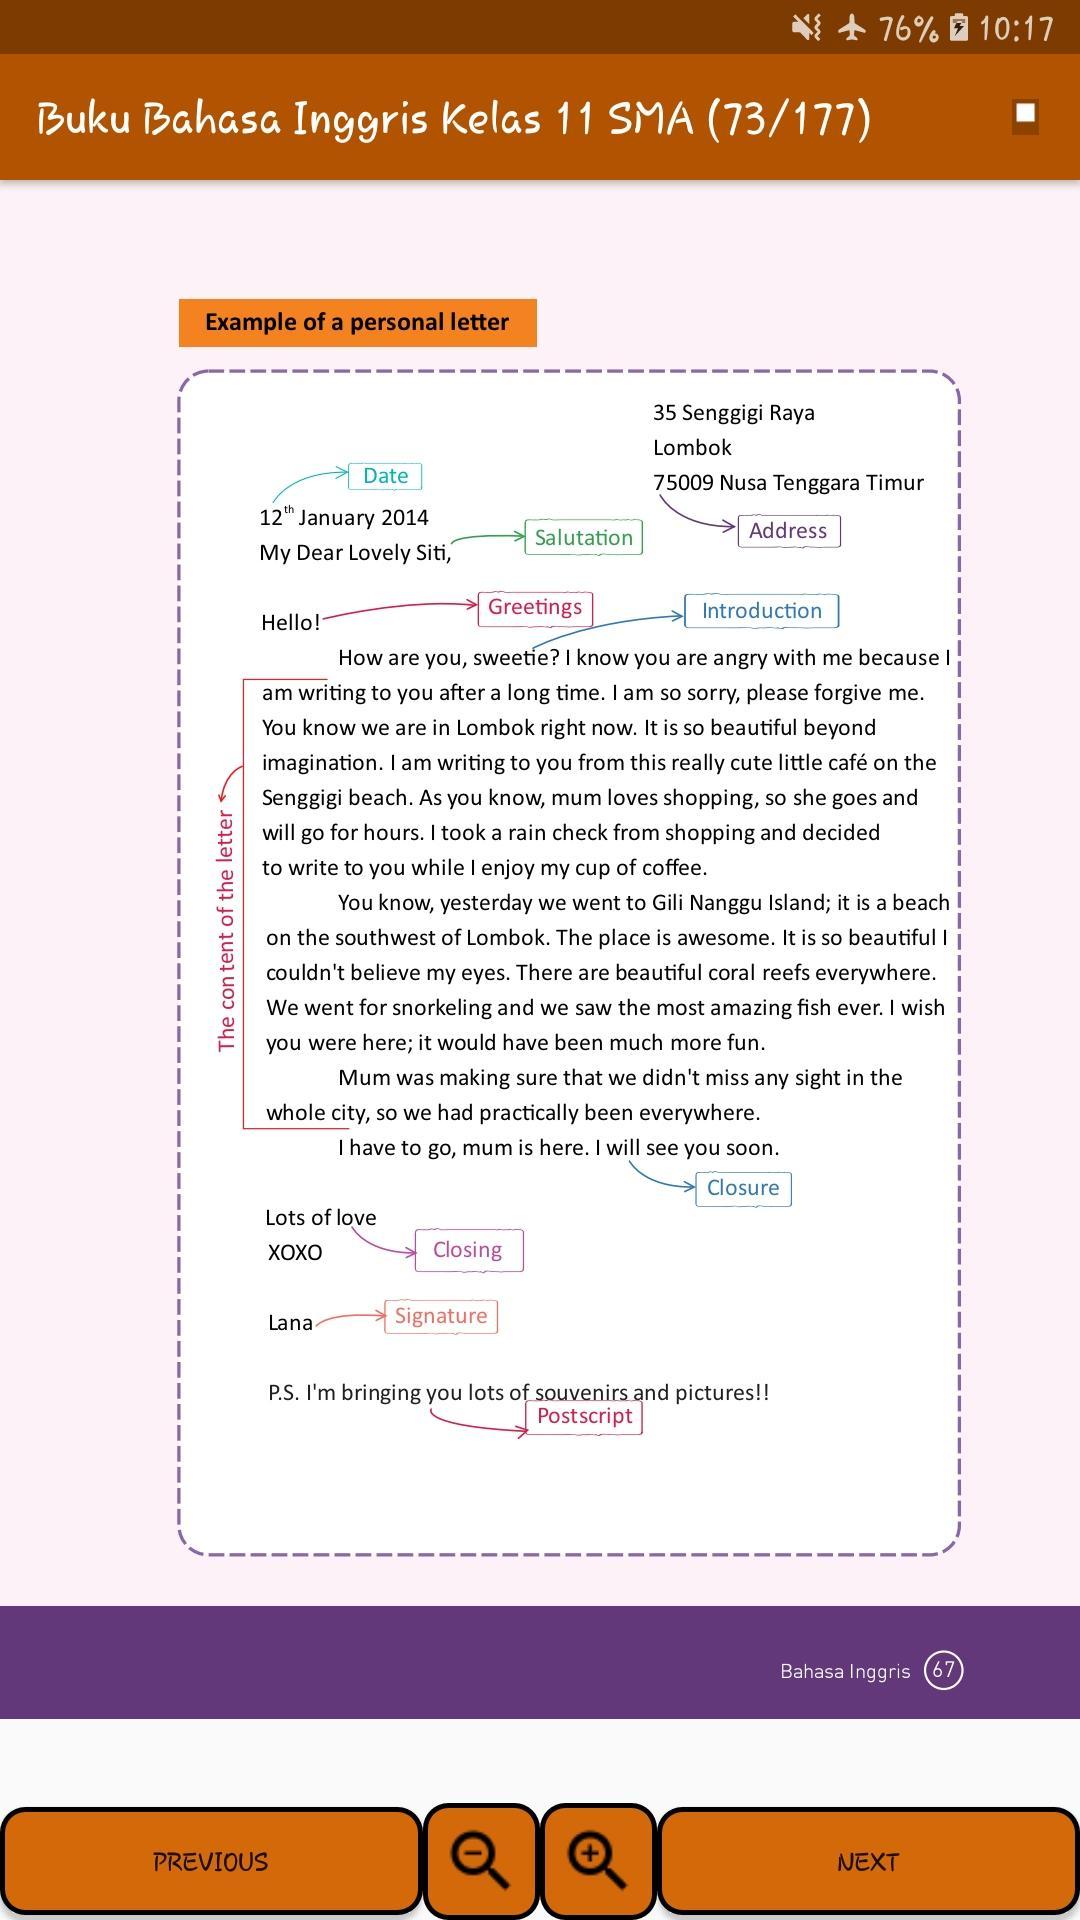 Buku Bahasa Inggris Kelas 11 Sma Kurikulum 2013 For Android Apk